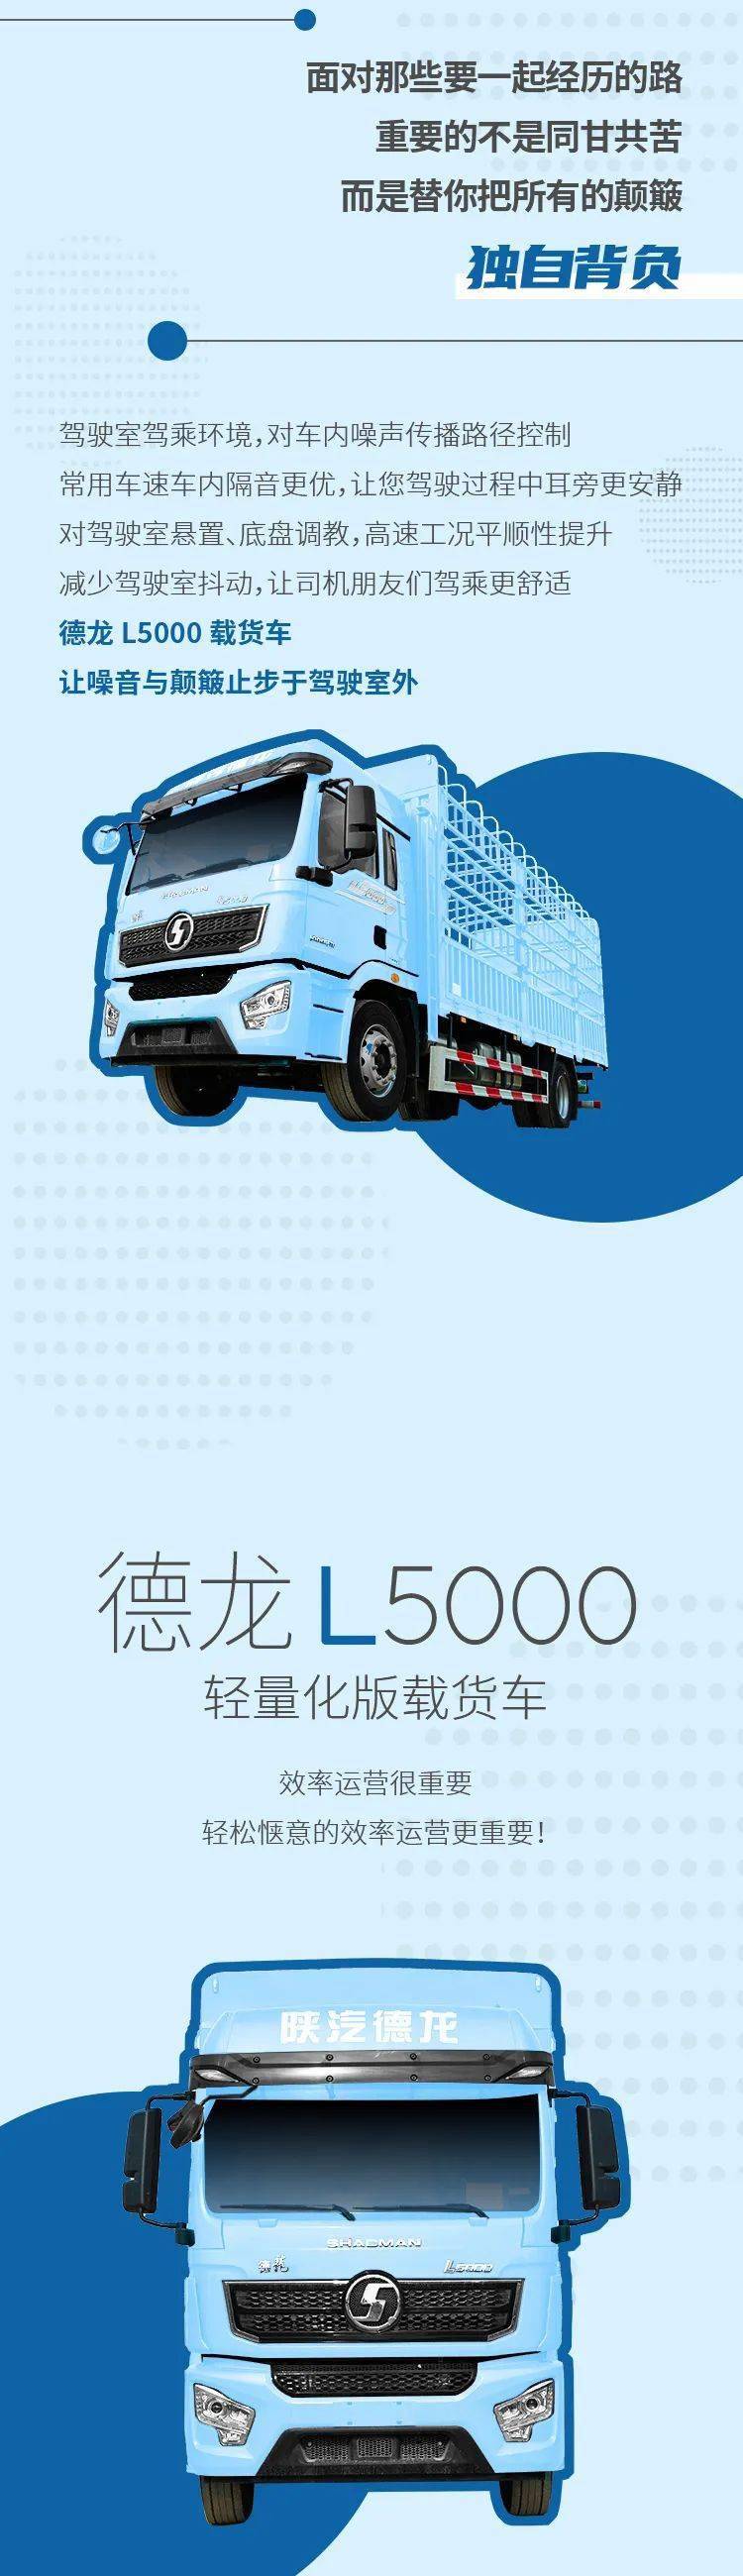 陕汽德龙l5000载货车有「适」无恐,就是这么惬意!